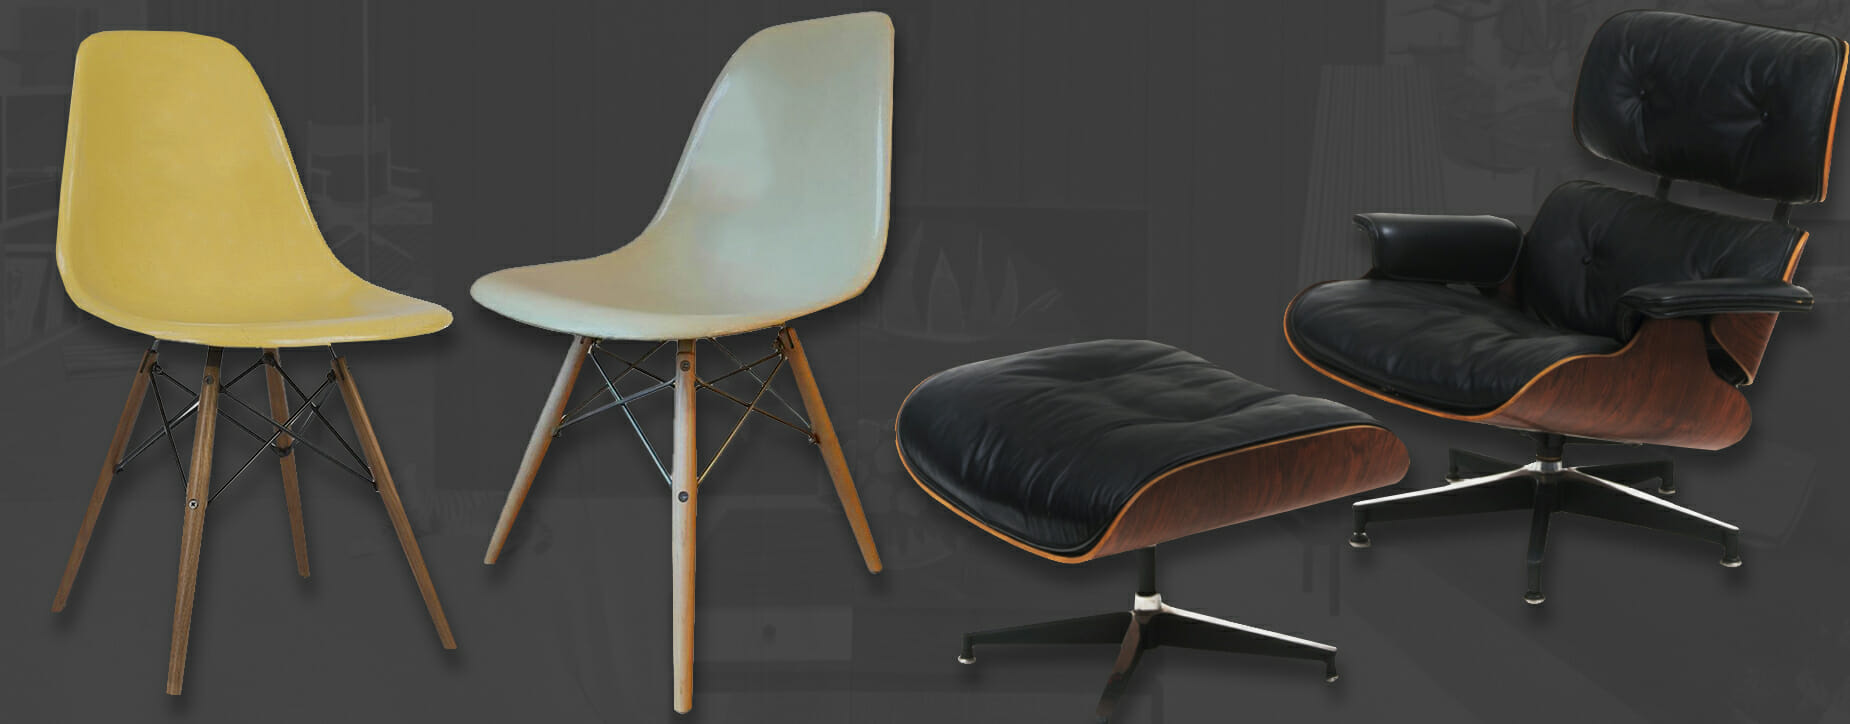 Eames chair designs